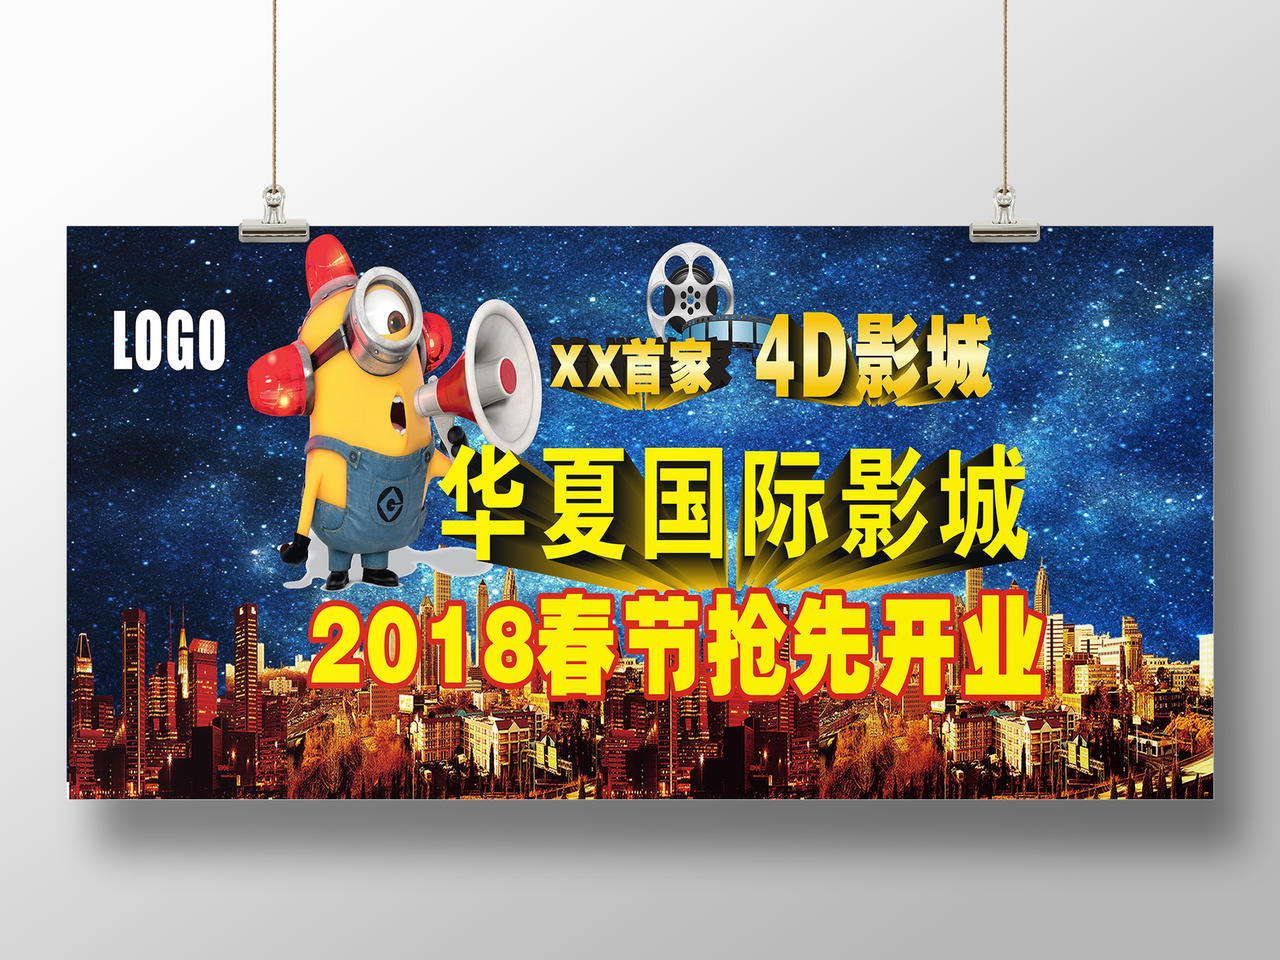 国际影城春节抢先开业电影院开业宣传海报